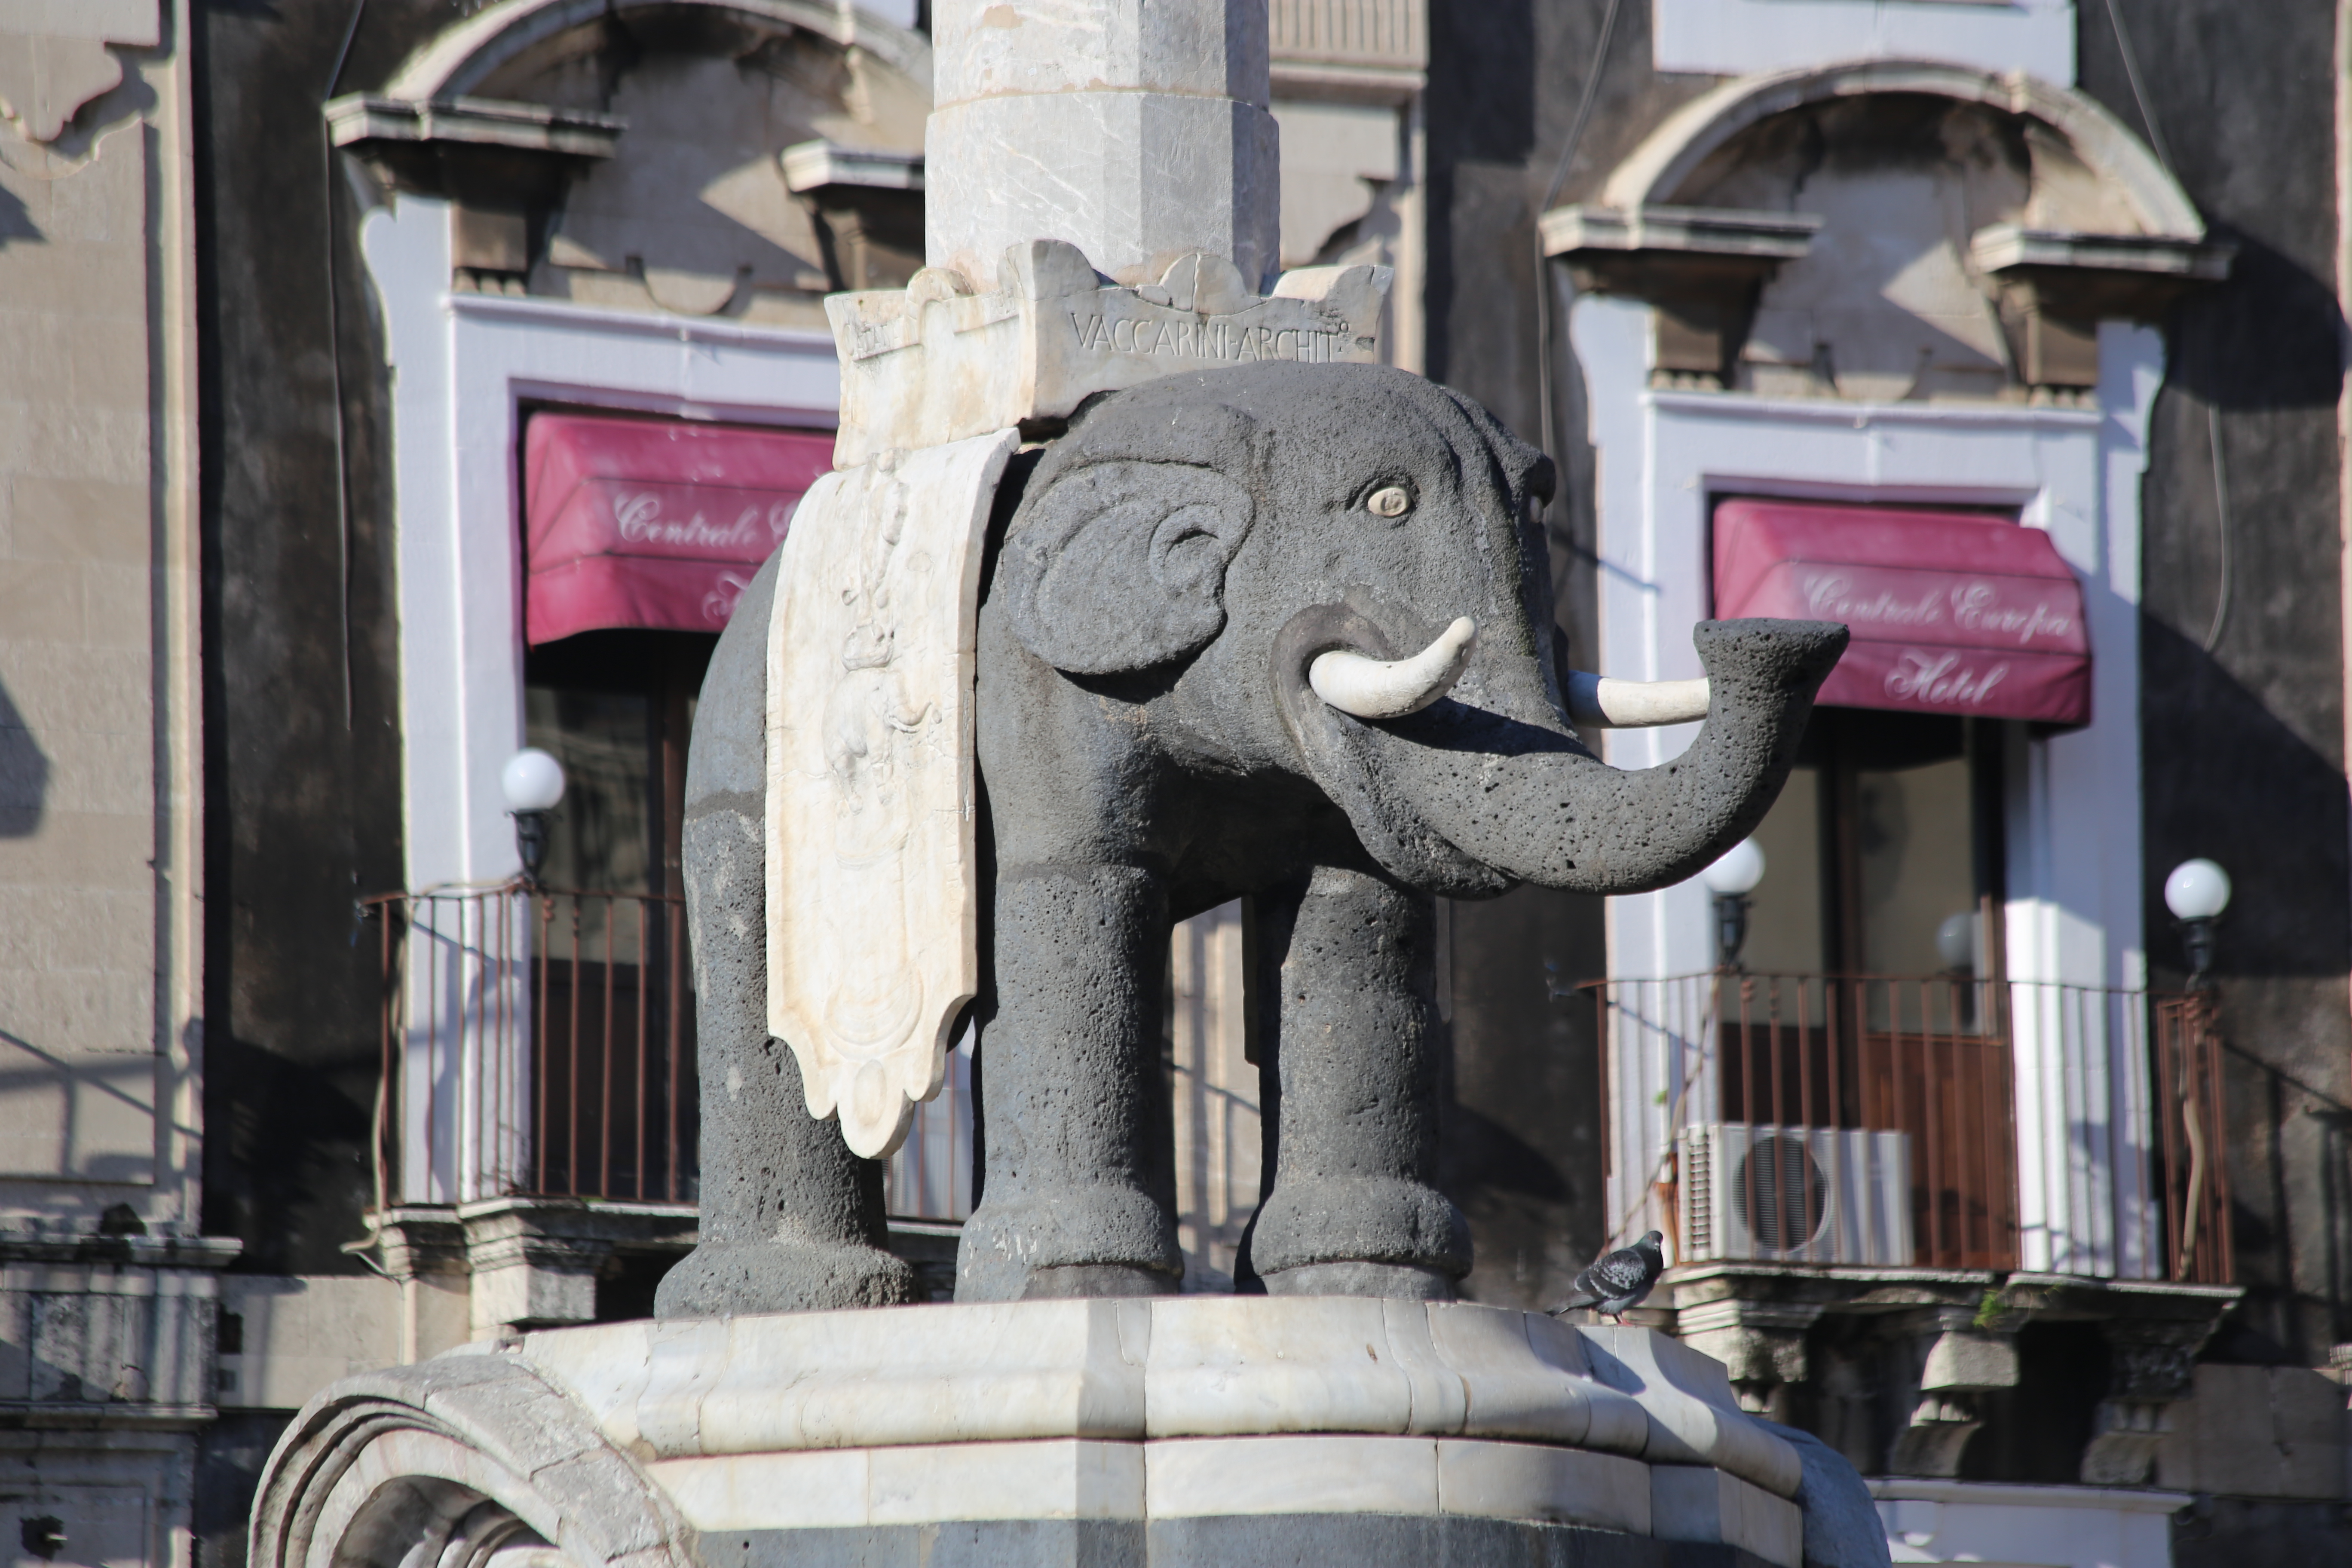 Piazza del Duomo, particolare della fontana dell'elefante.